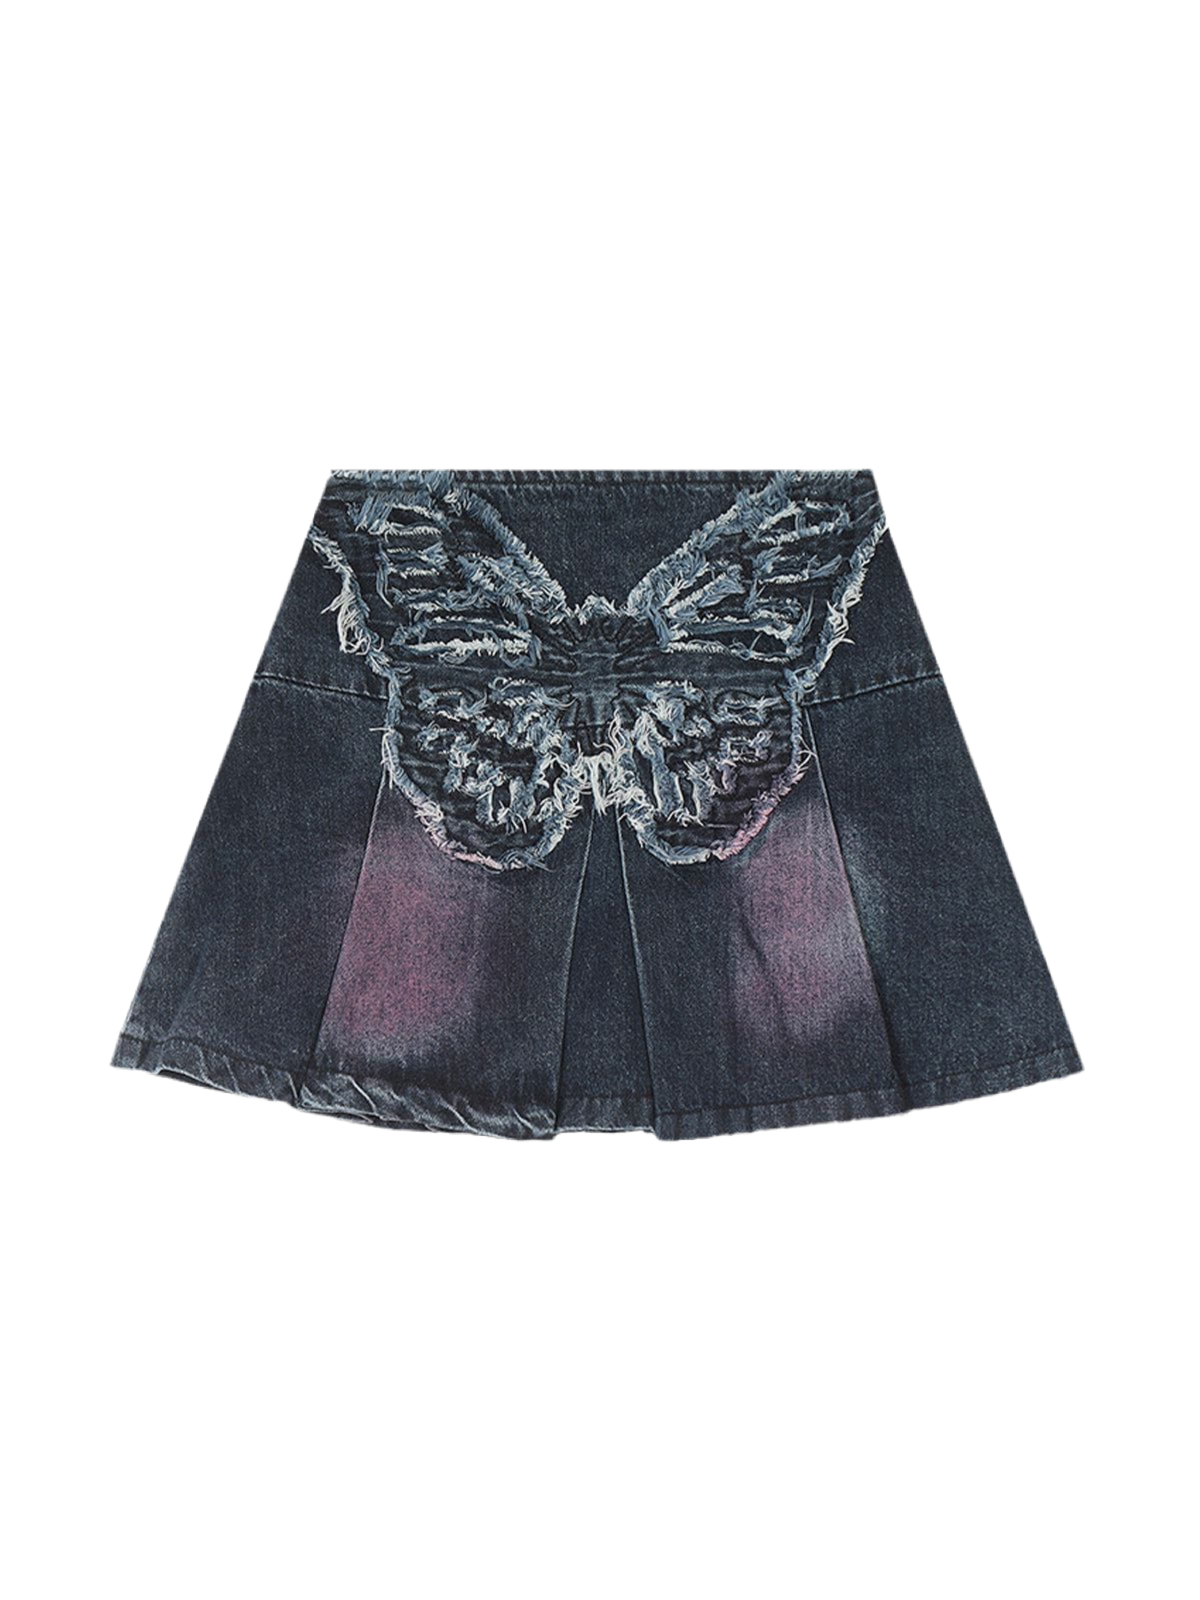 NB Fringe Butterfly Denim Skirt